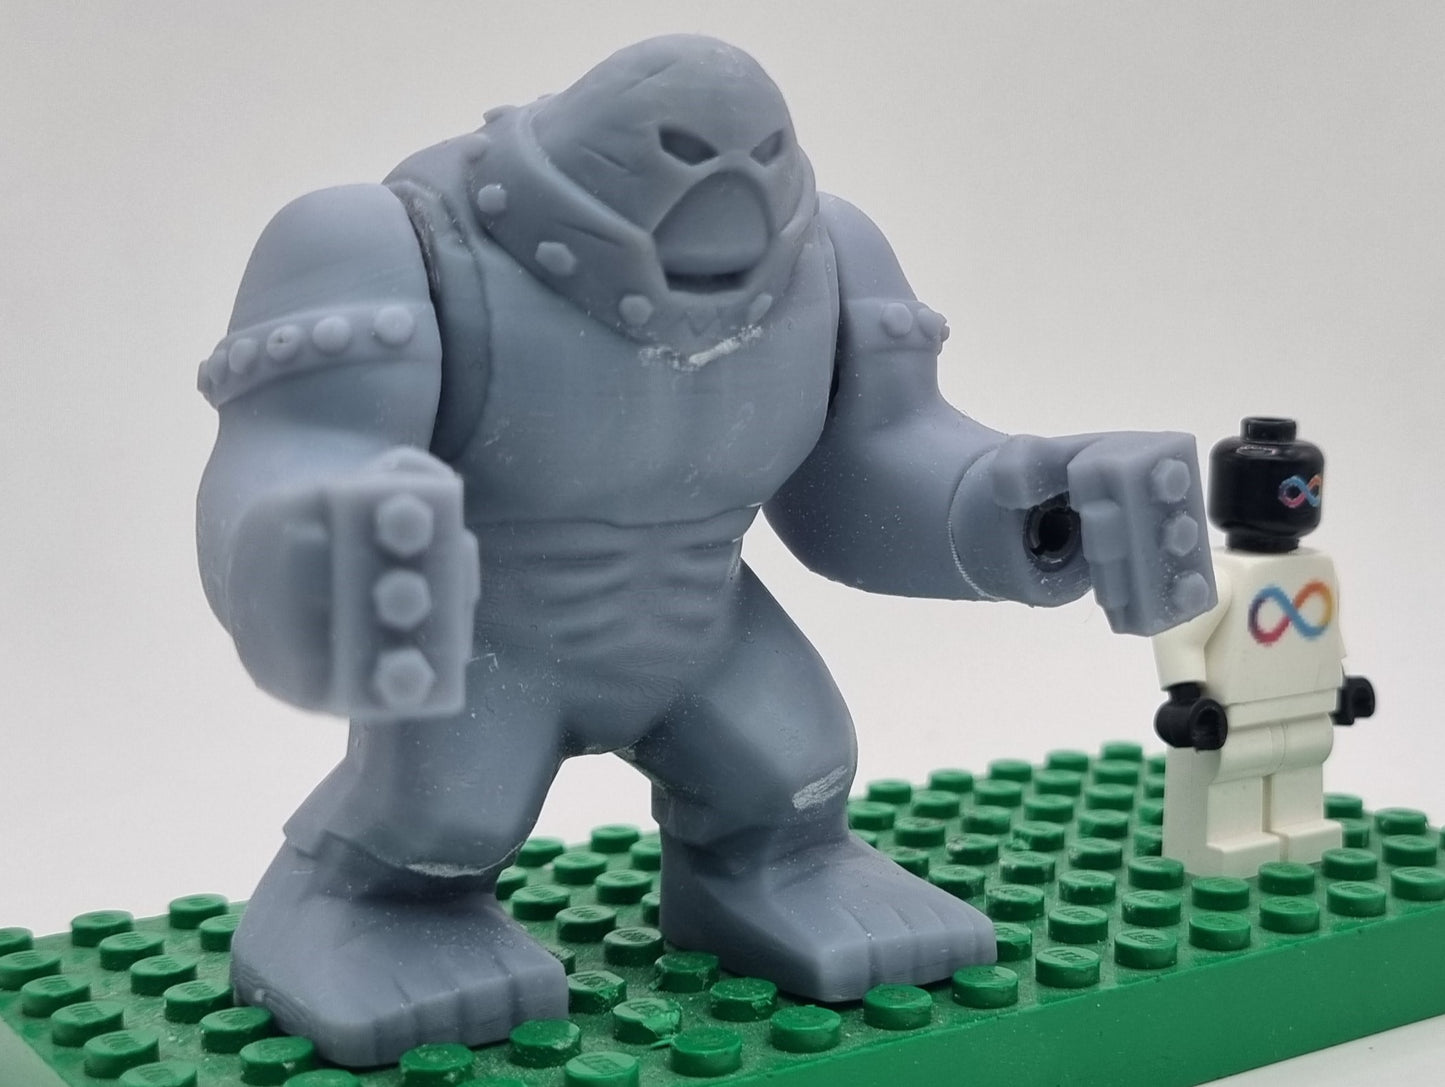 Building toy custom 3D printed super hero big red rampaging guy!